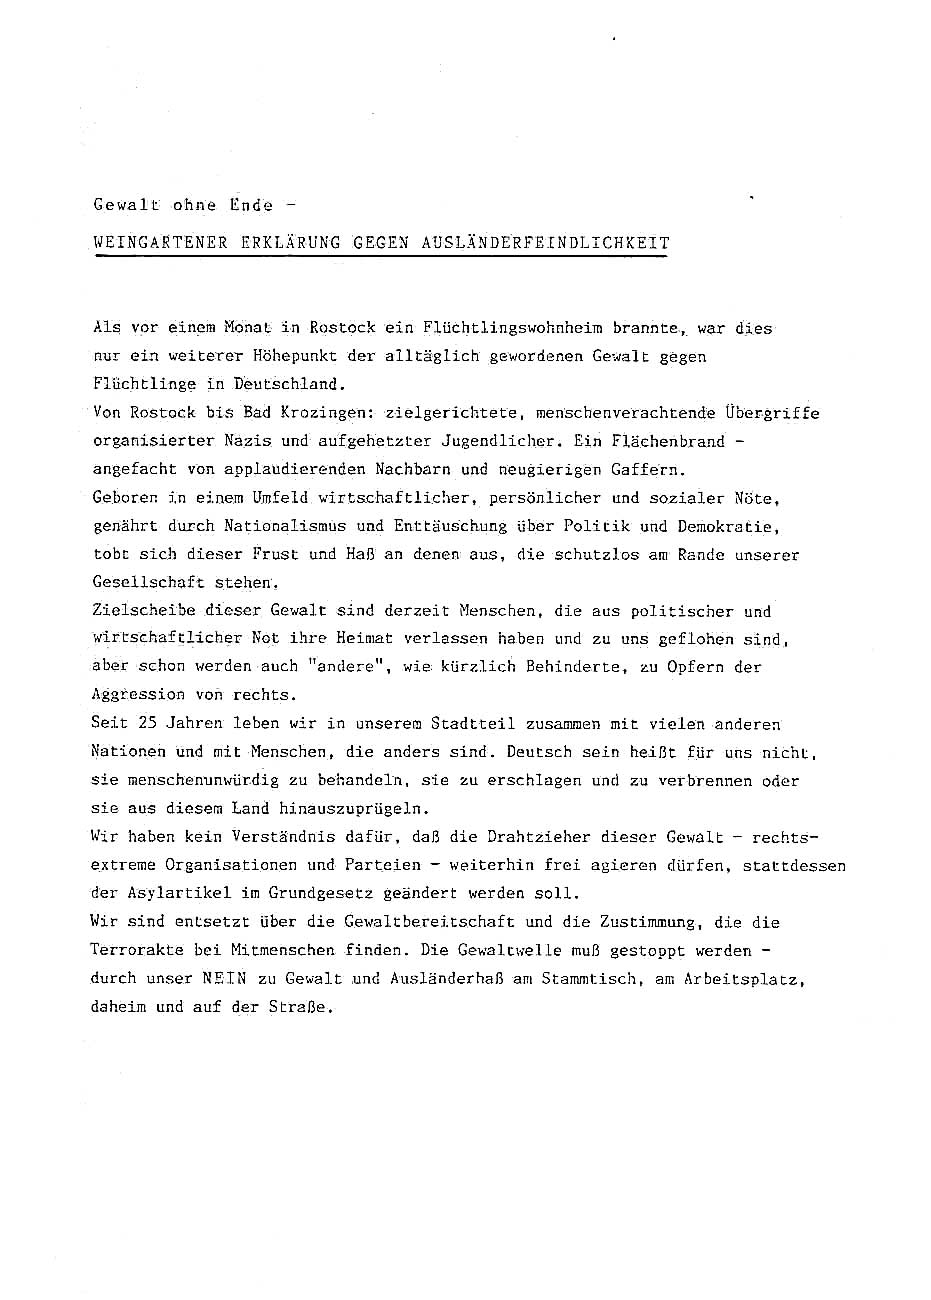 Eine Stellungnahme aus Weingarten zu den gewaltsamen Übergriffen auf Flüchtlingswohnheime in Deutschland.